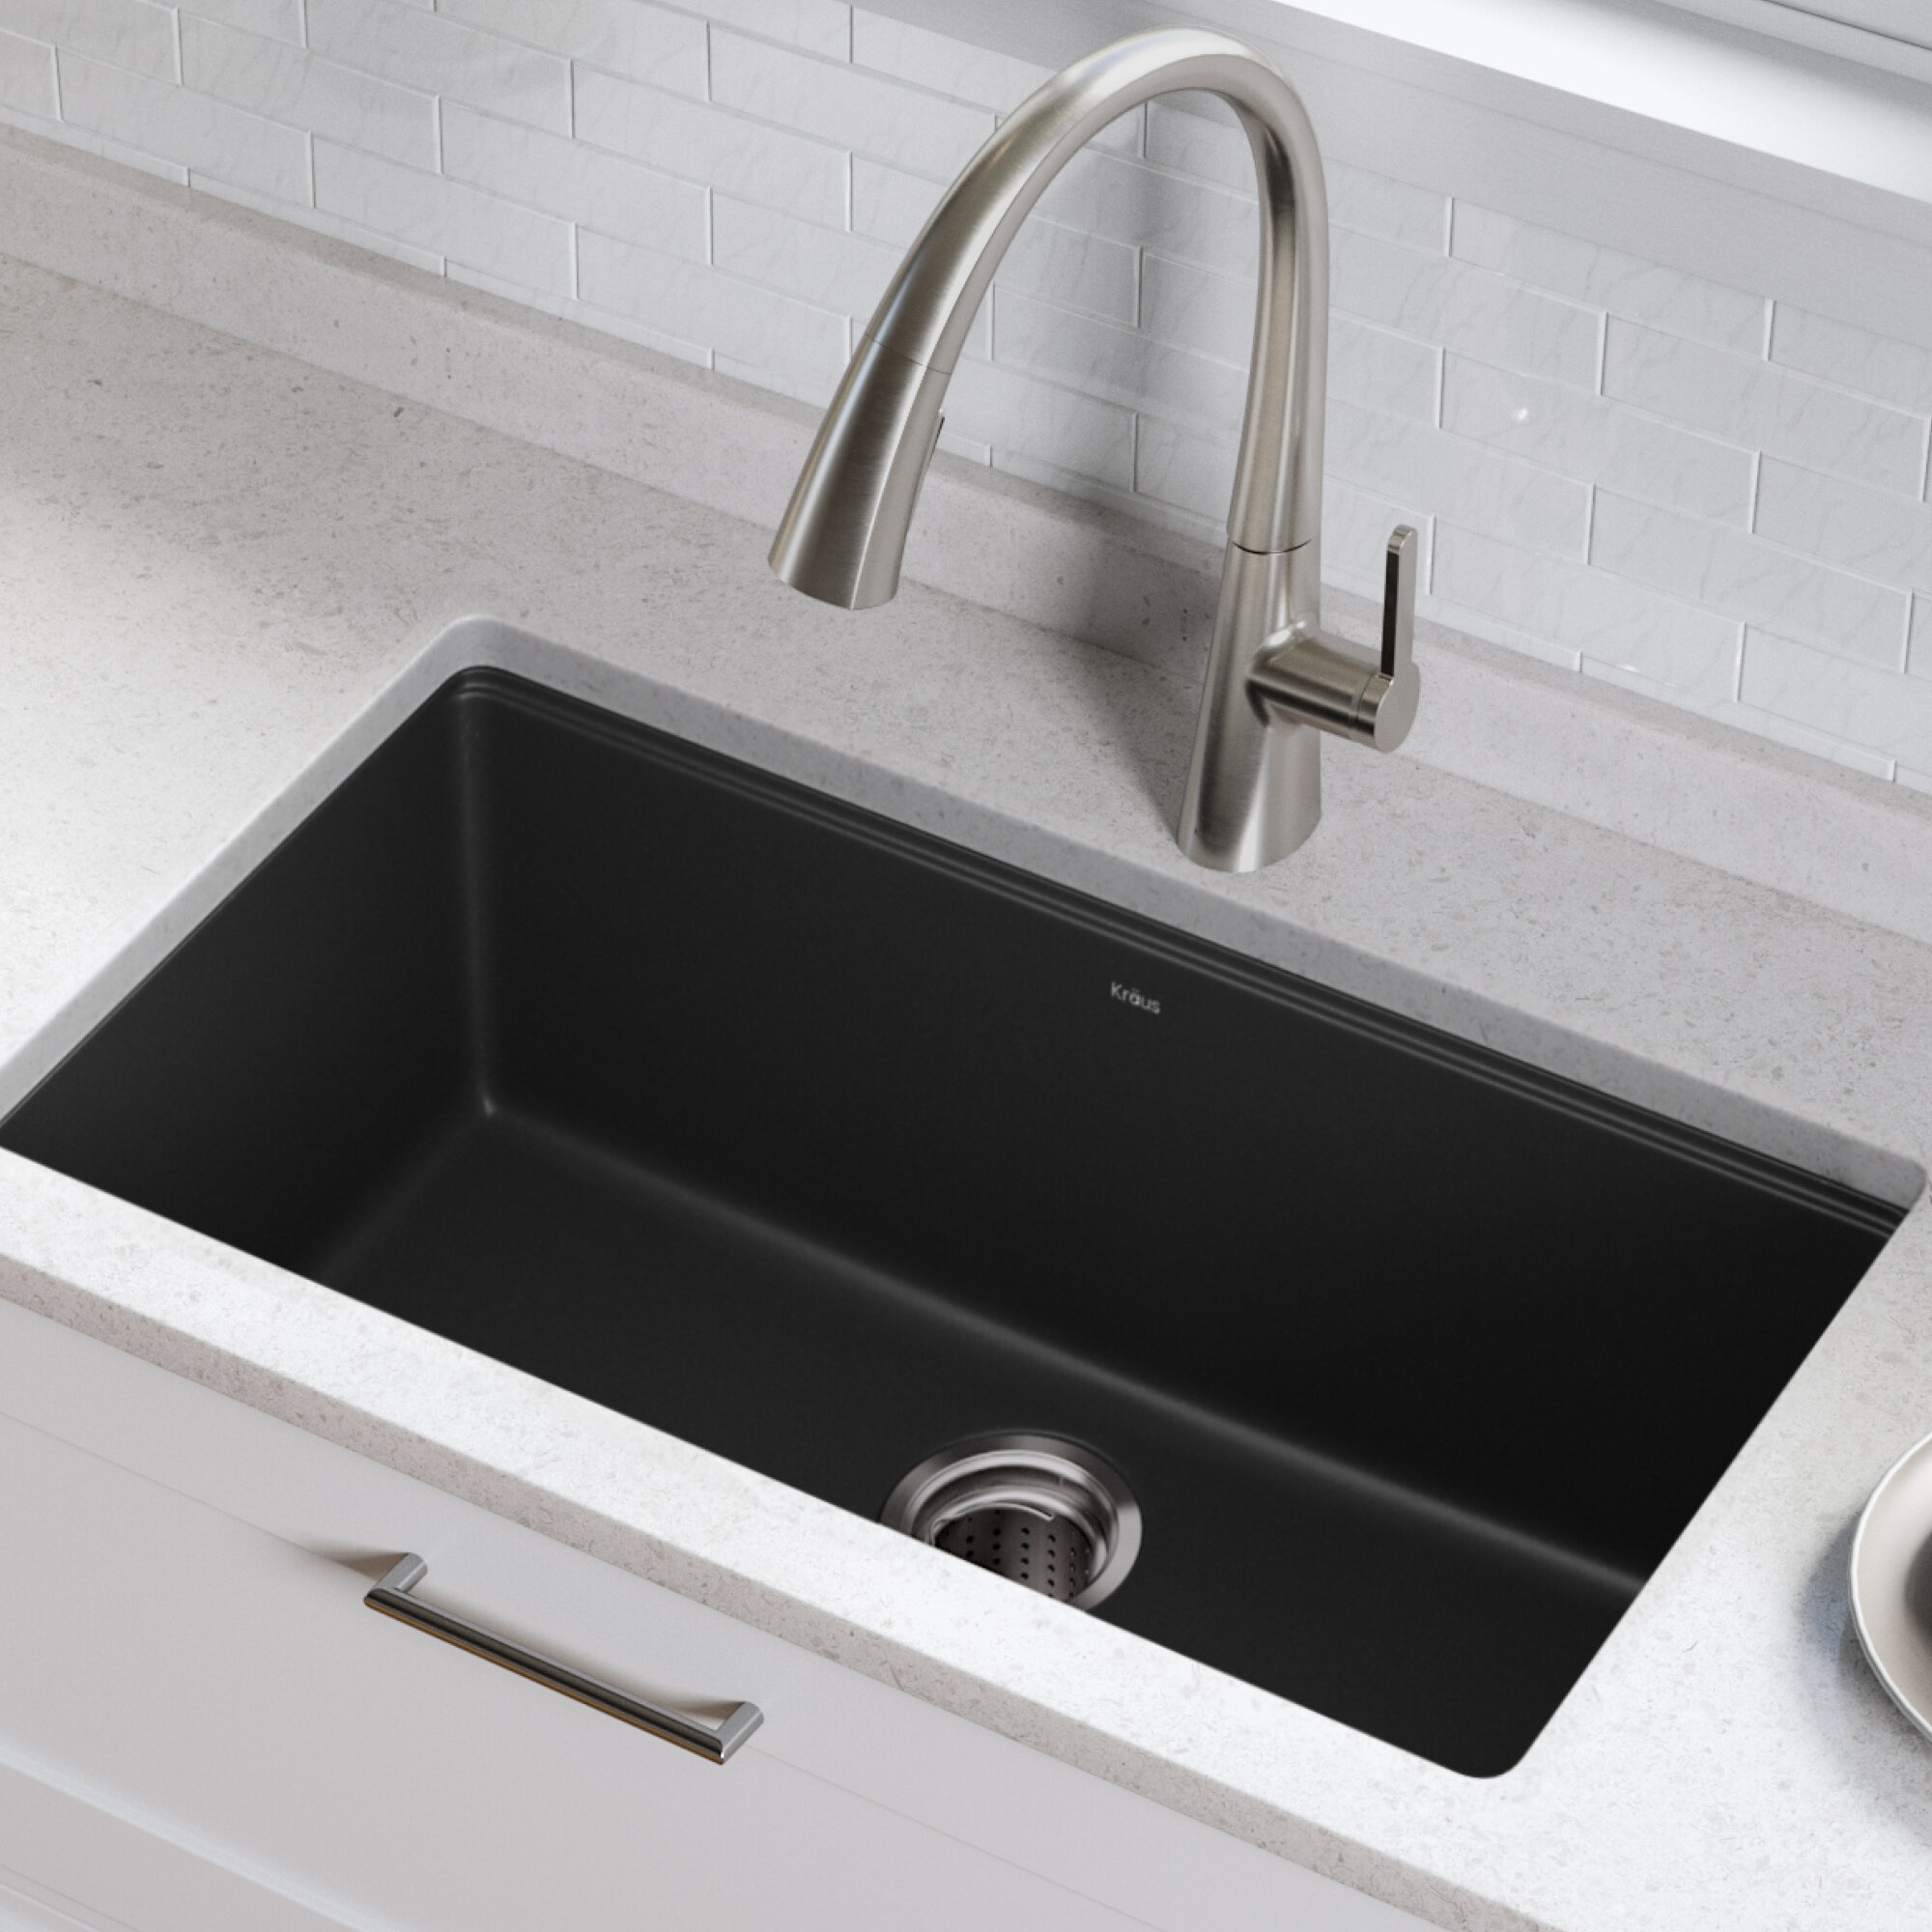 Kgu 413b Kraus 305 L X 17 W Undermount Kitchen Sink With Basket Strainer Reviews Wayfair